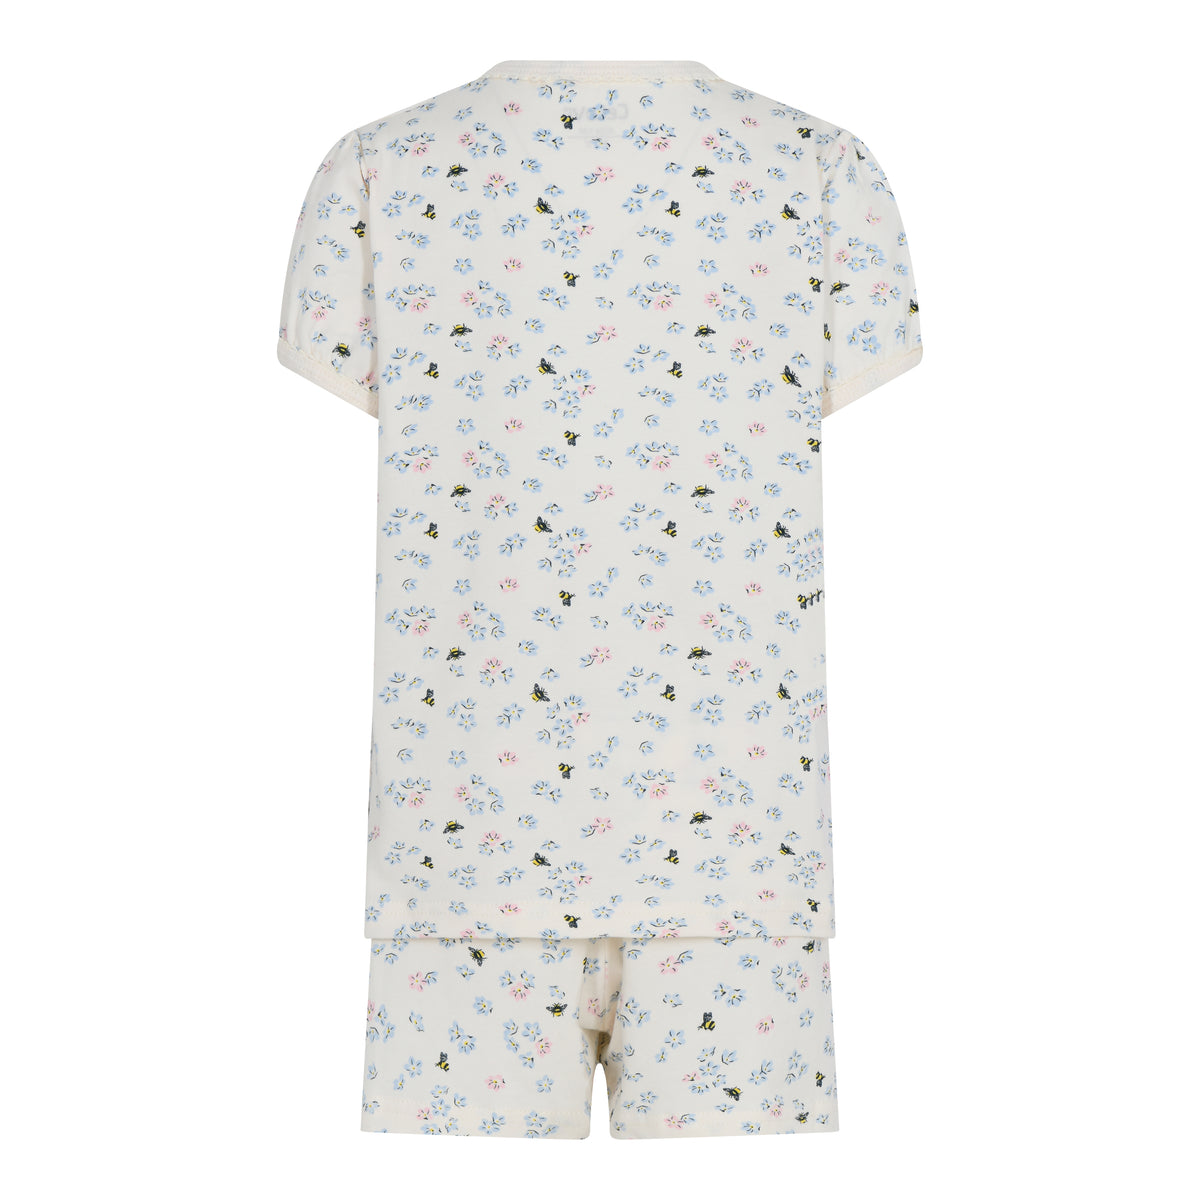 Süßer Sommer-Pyjama mit Blumenprint! Weicher Schlafanzug für ein angenehmes Tragegefühl, Einfaches An- und Ausziehen, auch über die Windel dank elastischem Material  Material: 95% Baumwolle, 5% Elasthan